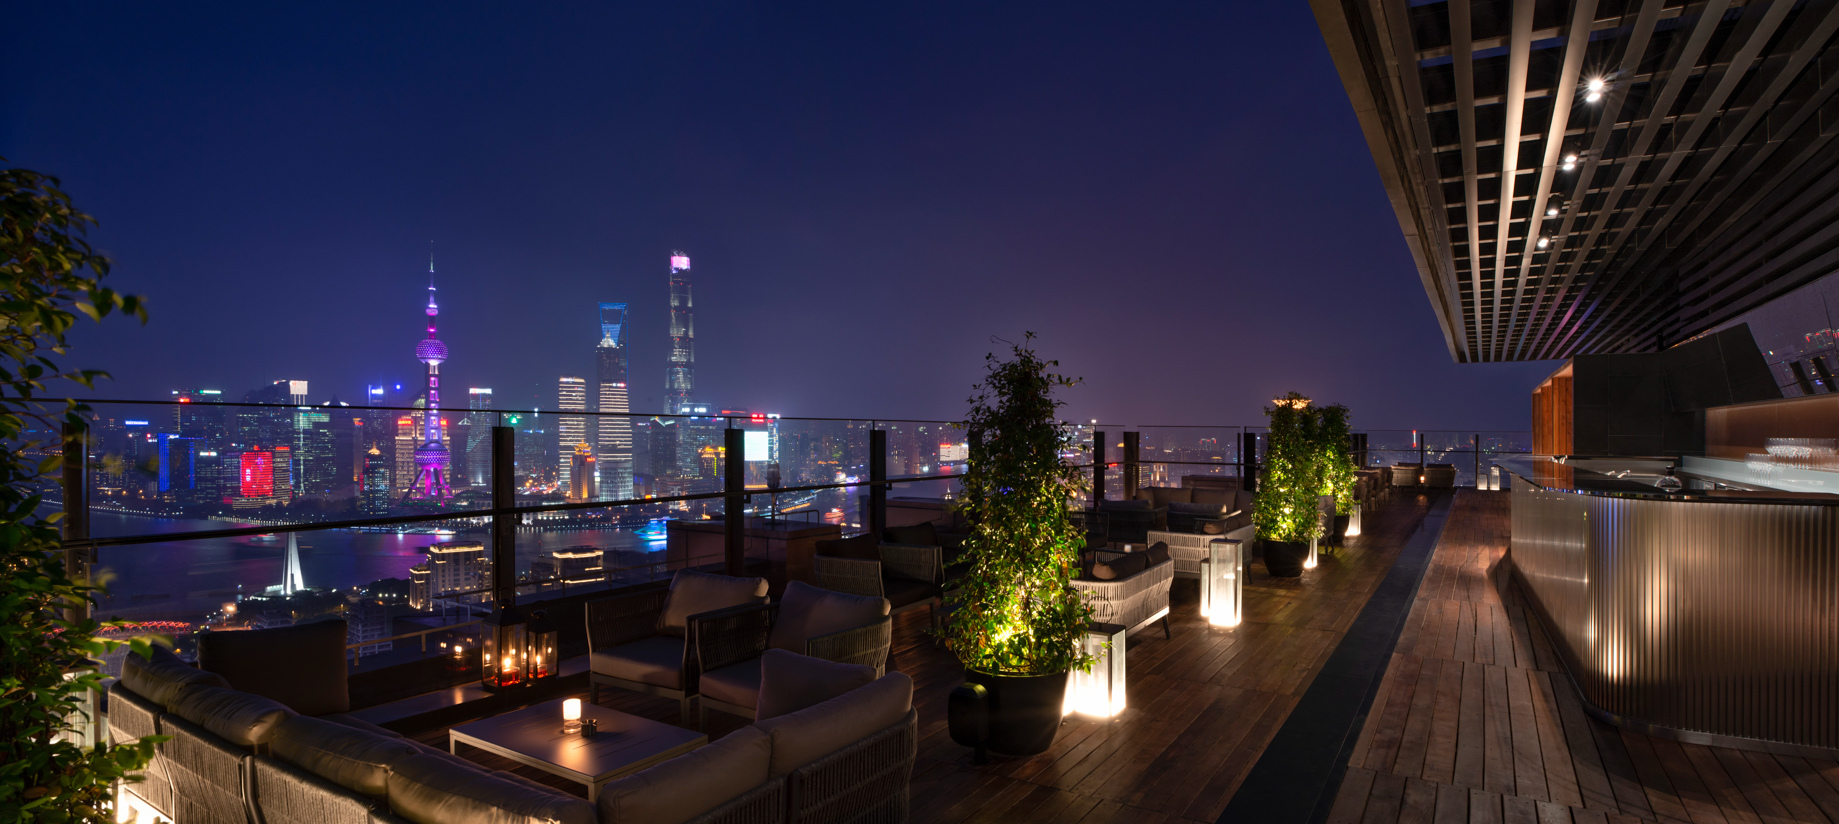 Bvlgari Hotel Shanghai – Shanghai, China – La Terrazza Night View